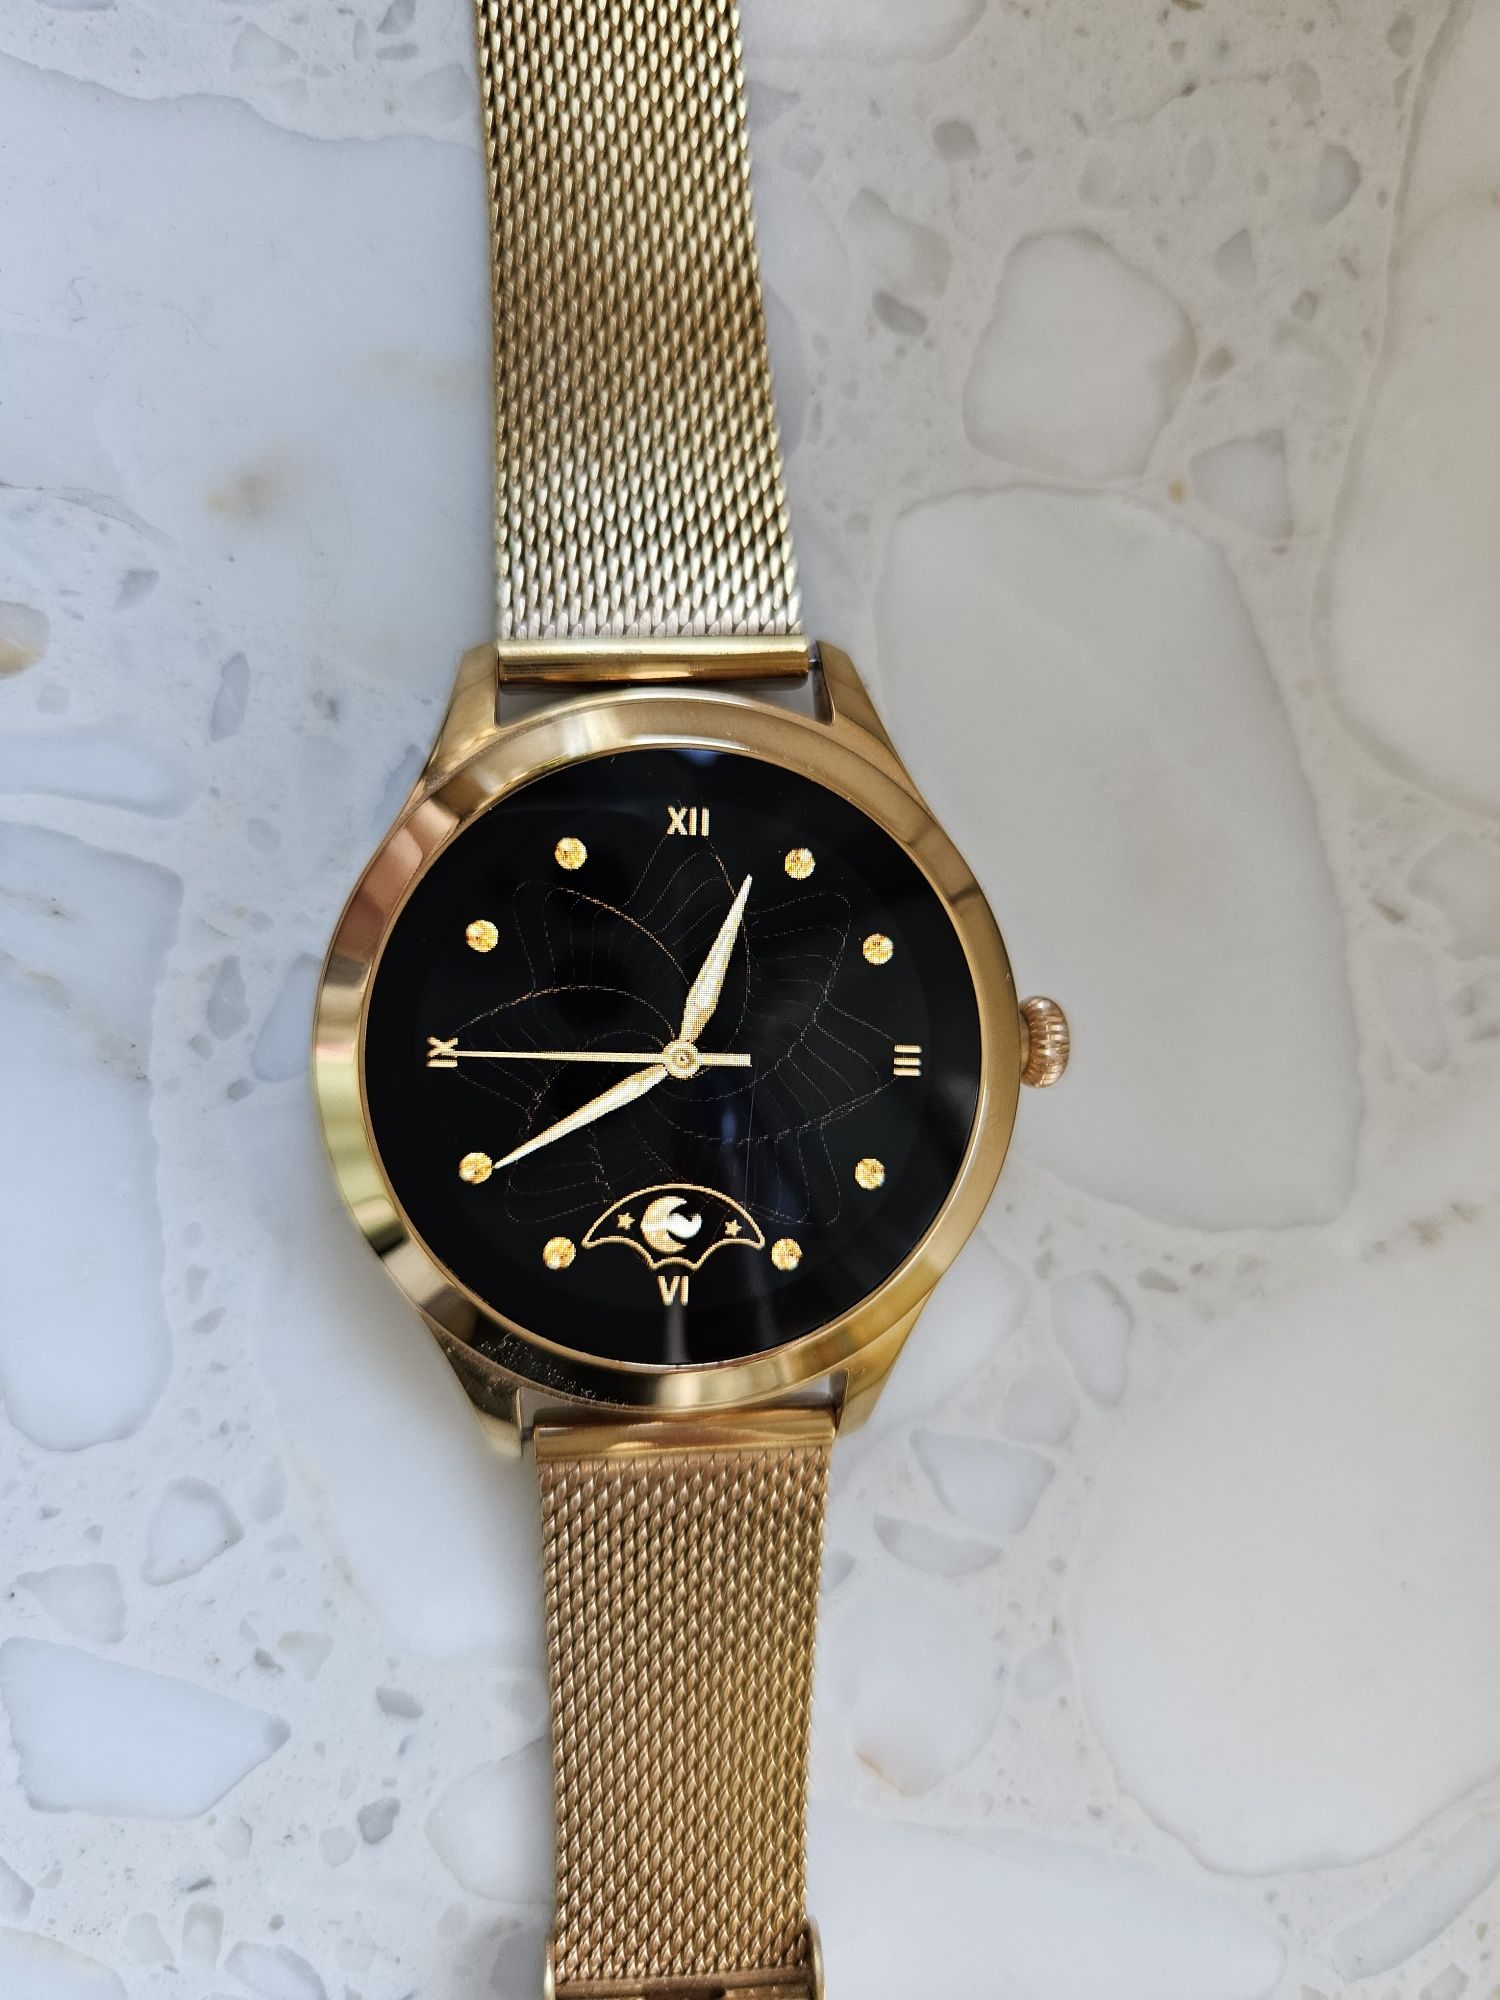 Smartwatch MAXCOM Gold